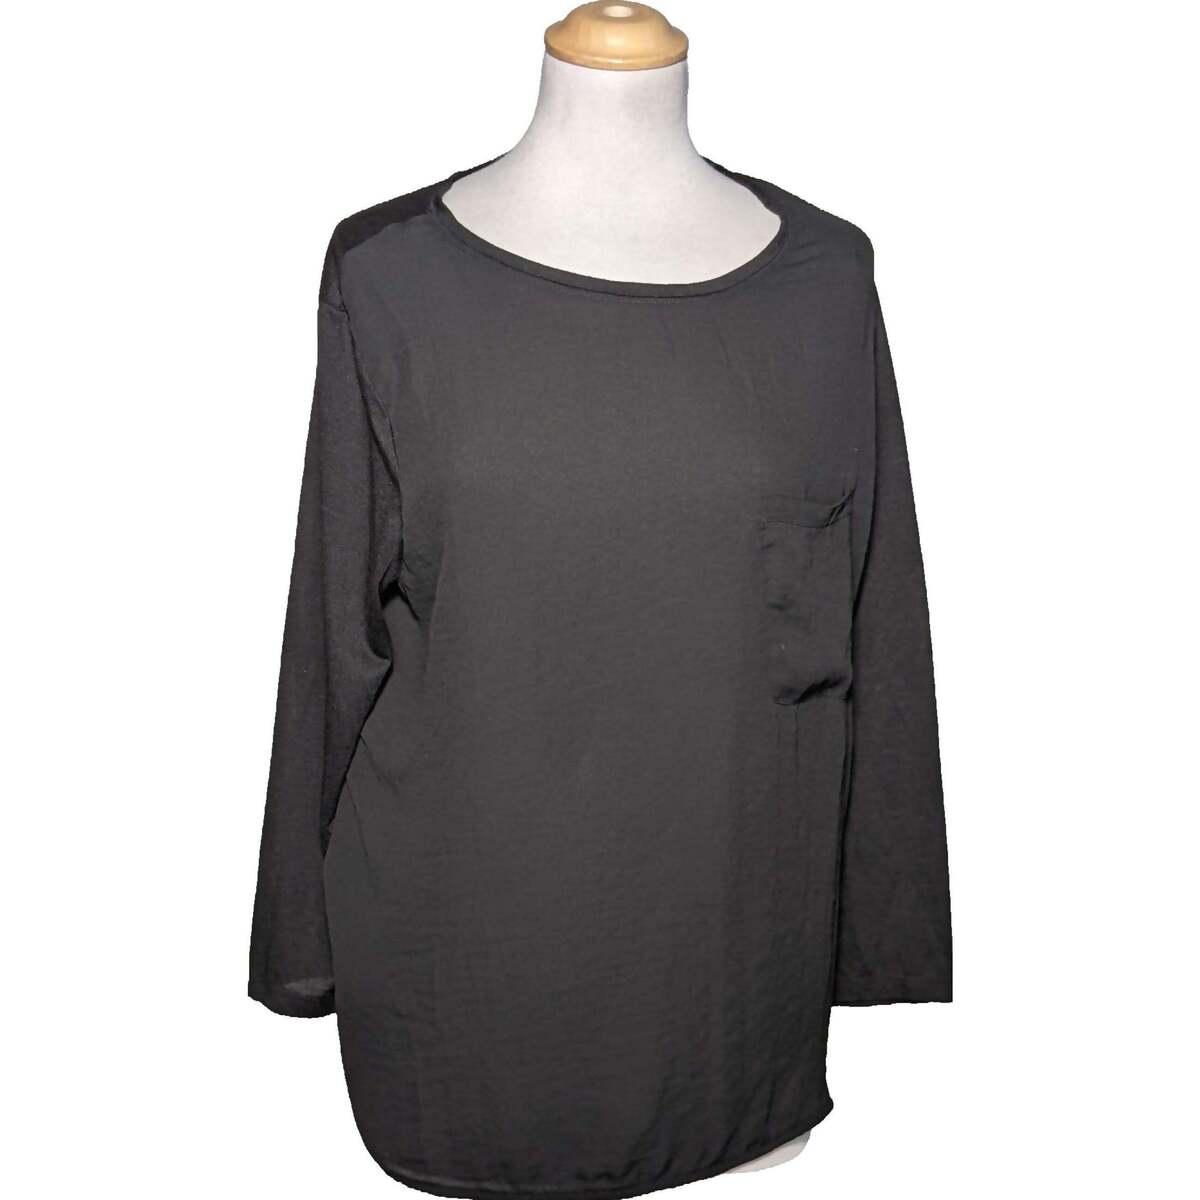 Vêtements Femme adidas Lounge sweatshirt with BOS logo in gray H&M top manches longues  40 - T3 - L Noir Noir